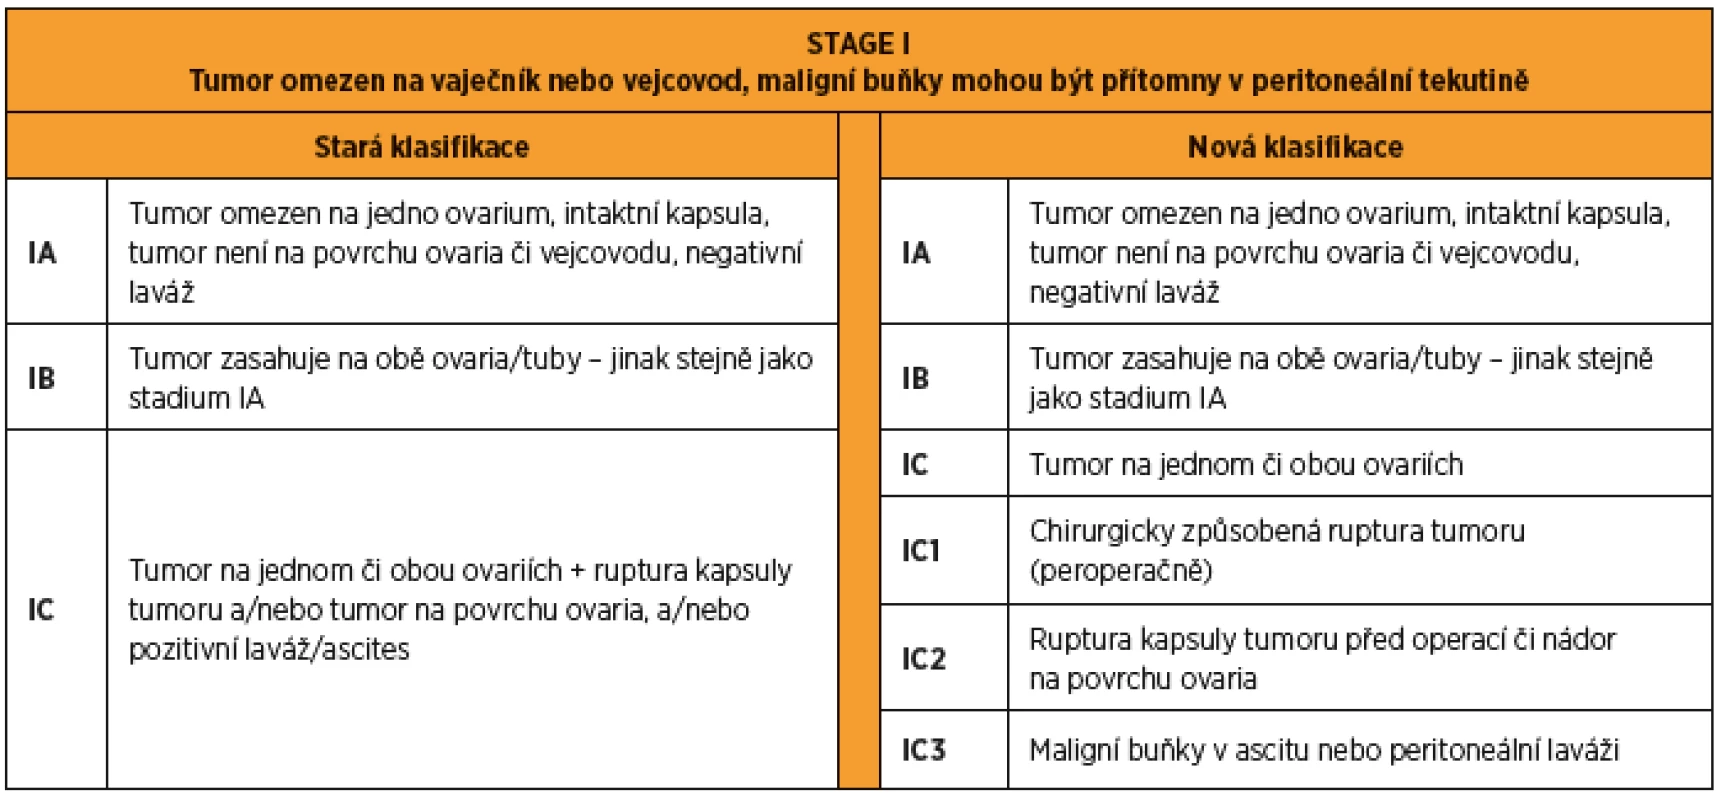 FIGO 2014 stage I karcinomu ovaria a tuby. Rozdíly mezi starou a novou klasifikací.